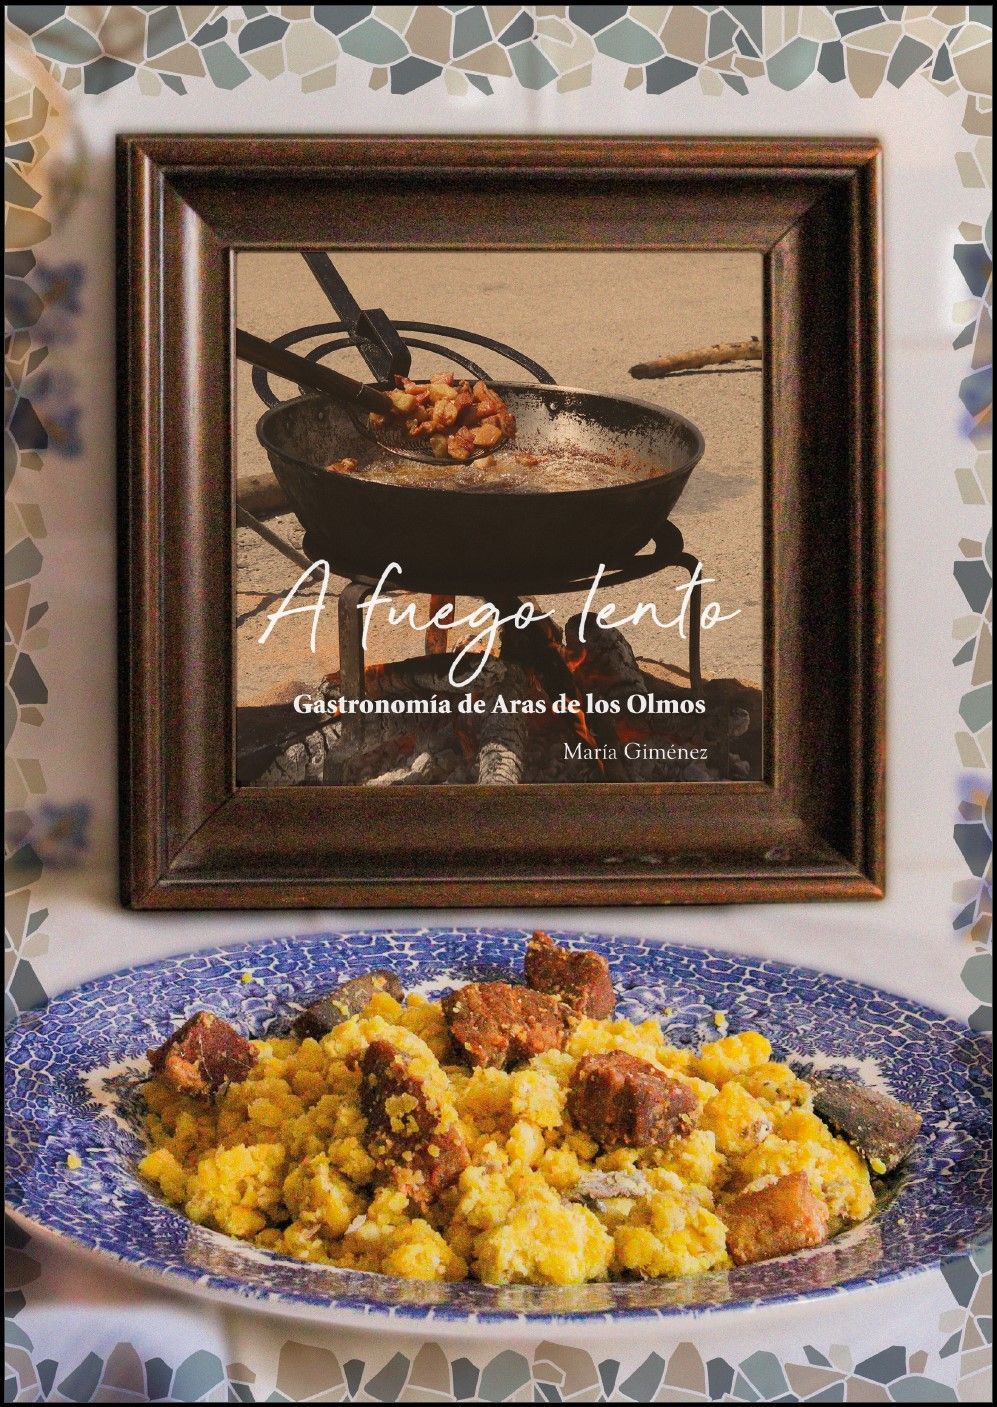 El libro 'A fuego lento' sobre la gastronomía de Aras de los Olmos